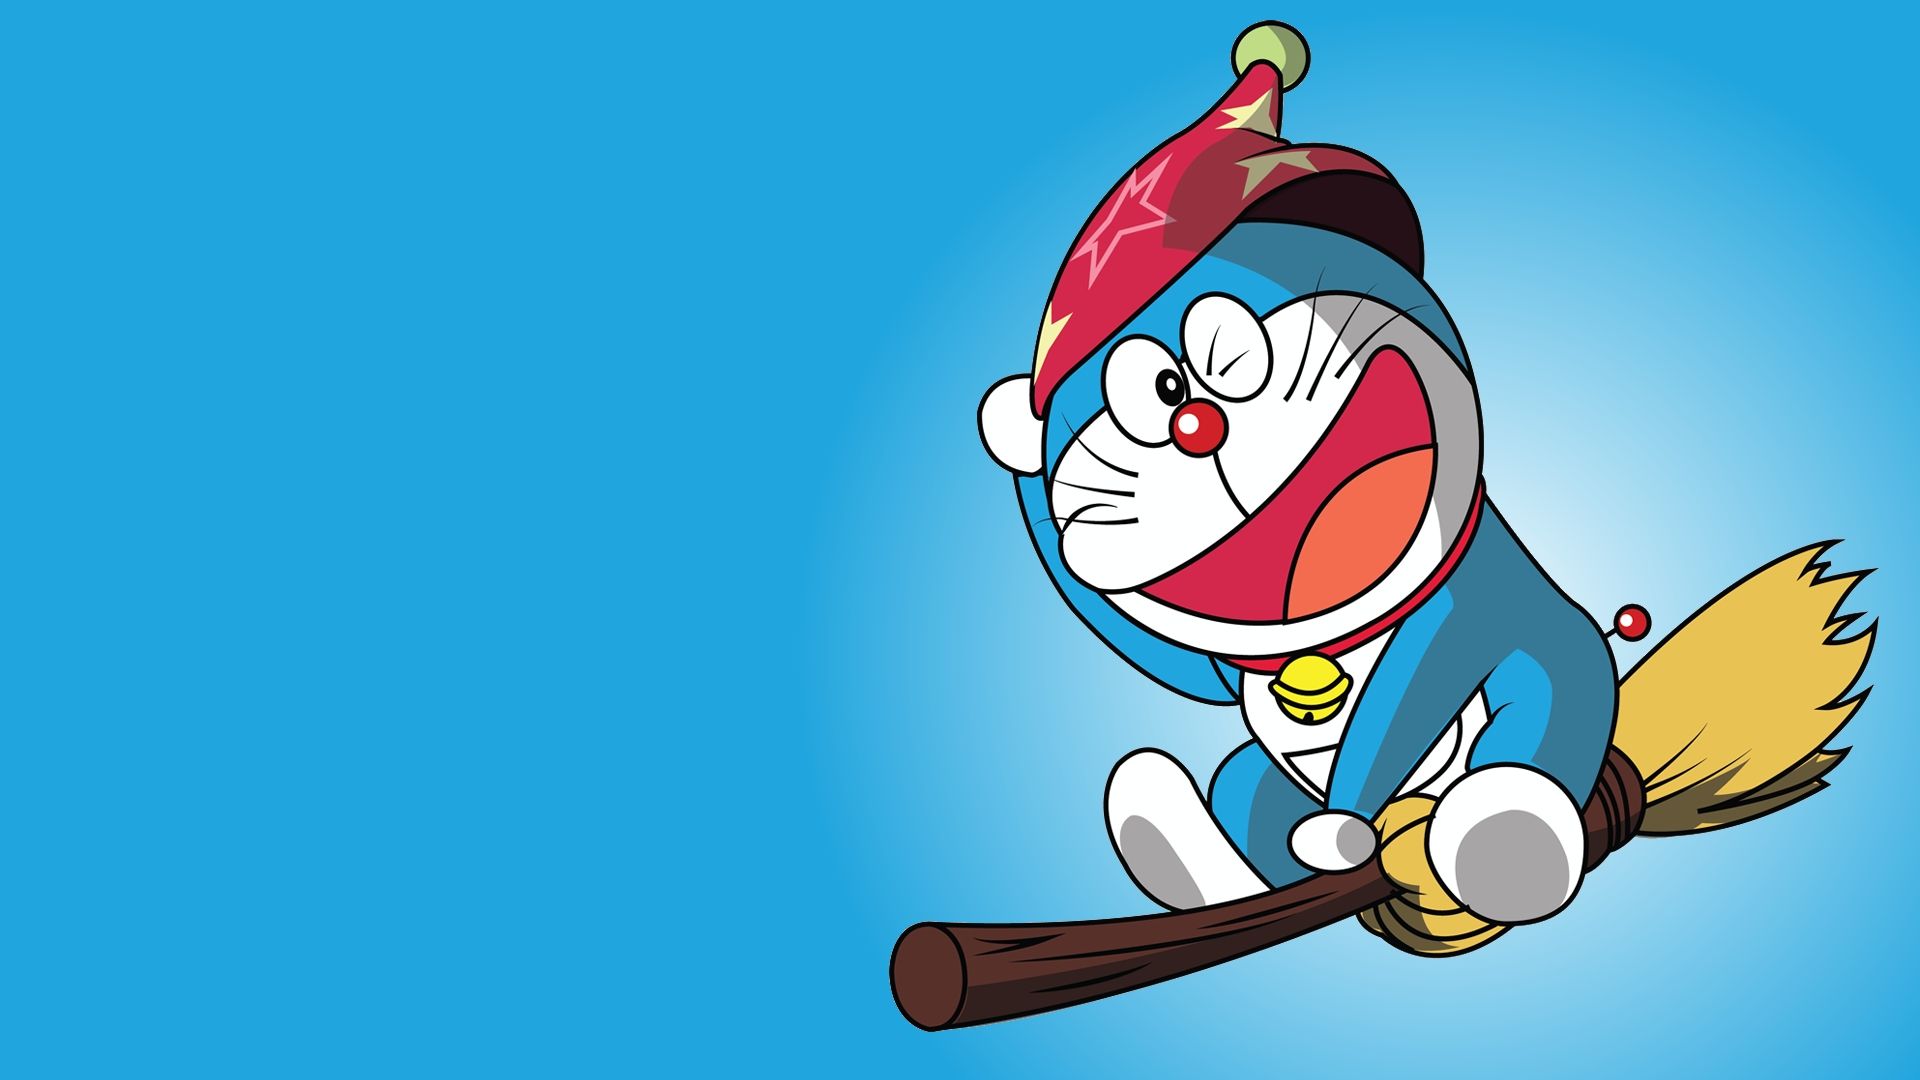 Bạn có yêu mèo máy Doraemon không? Hãy trang trí PC của bạn với những hình nền Doraemon tuyệt đẹp, đáng yêu và vui nhộn. Chú mèo máy đáng yêu này không chỉ dễ thương mà còn mang lại niềm vui và giải trí cho cuộc sống của bạn. Hãy đón xem hình nền Doraemon cho PC và cùng làm mới giao diện của máy tính của bạn!